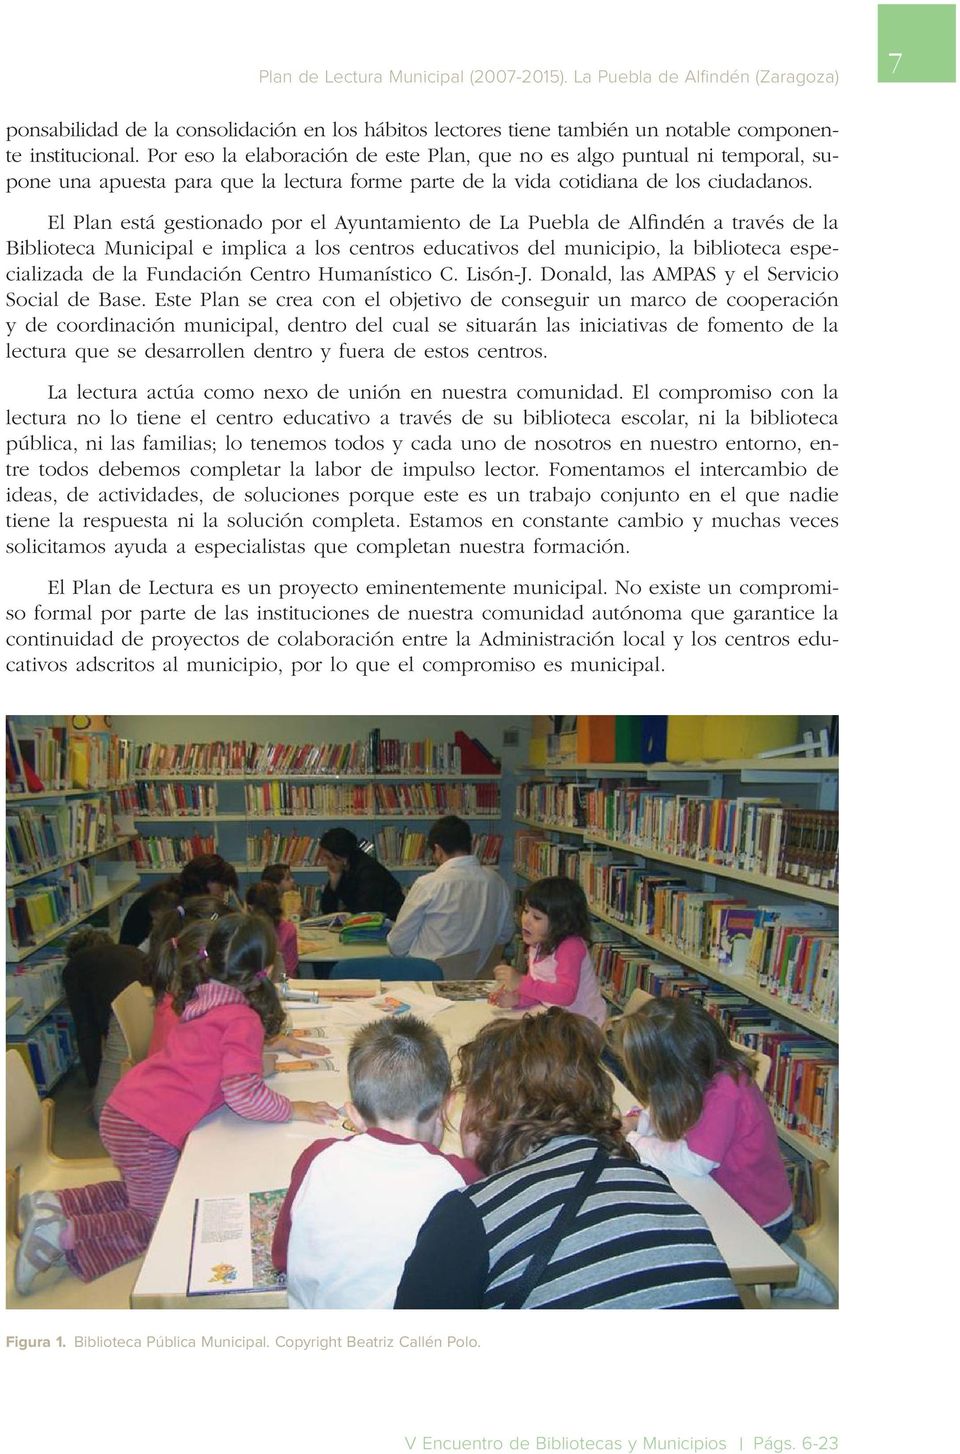 El Plan está gestionado por el Ayuntamiento de La Puebla de Alfindén a través de la Biblioteca Municipal e implica a los centros educativos del municipio, la biblioteca especializada de la Fundación